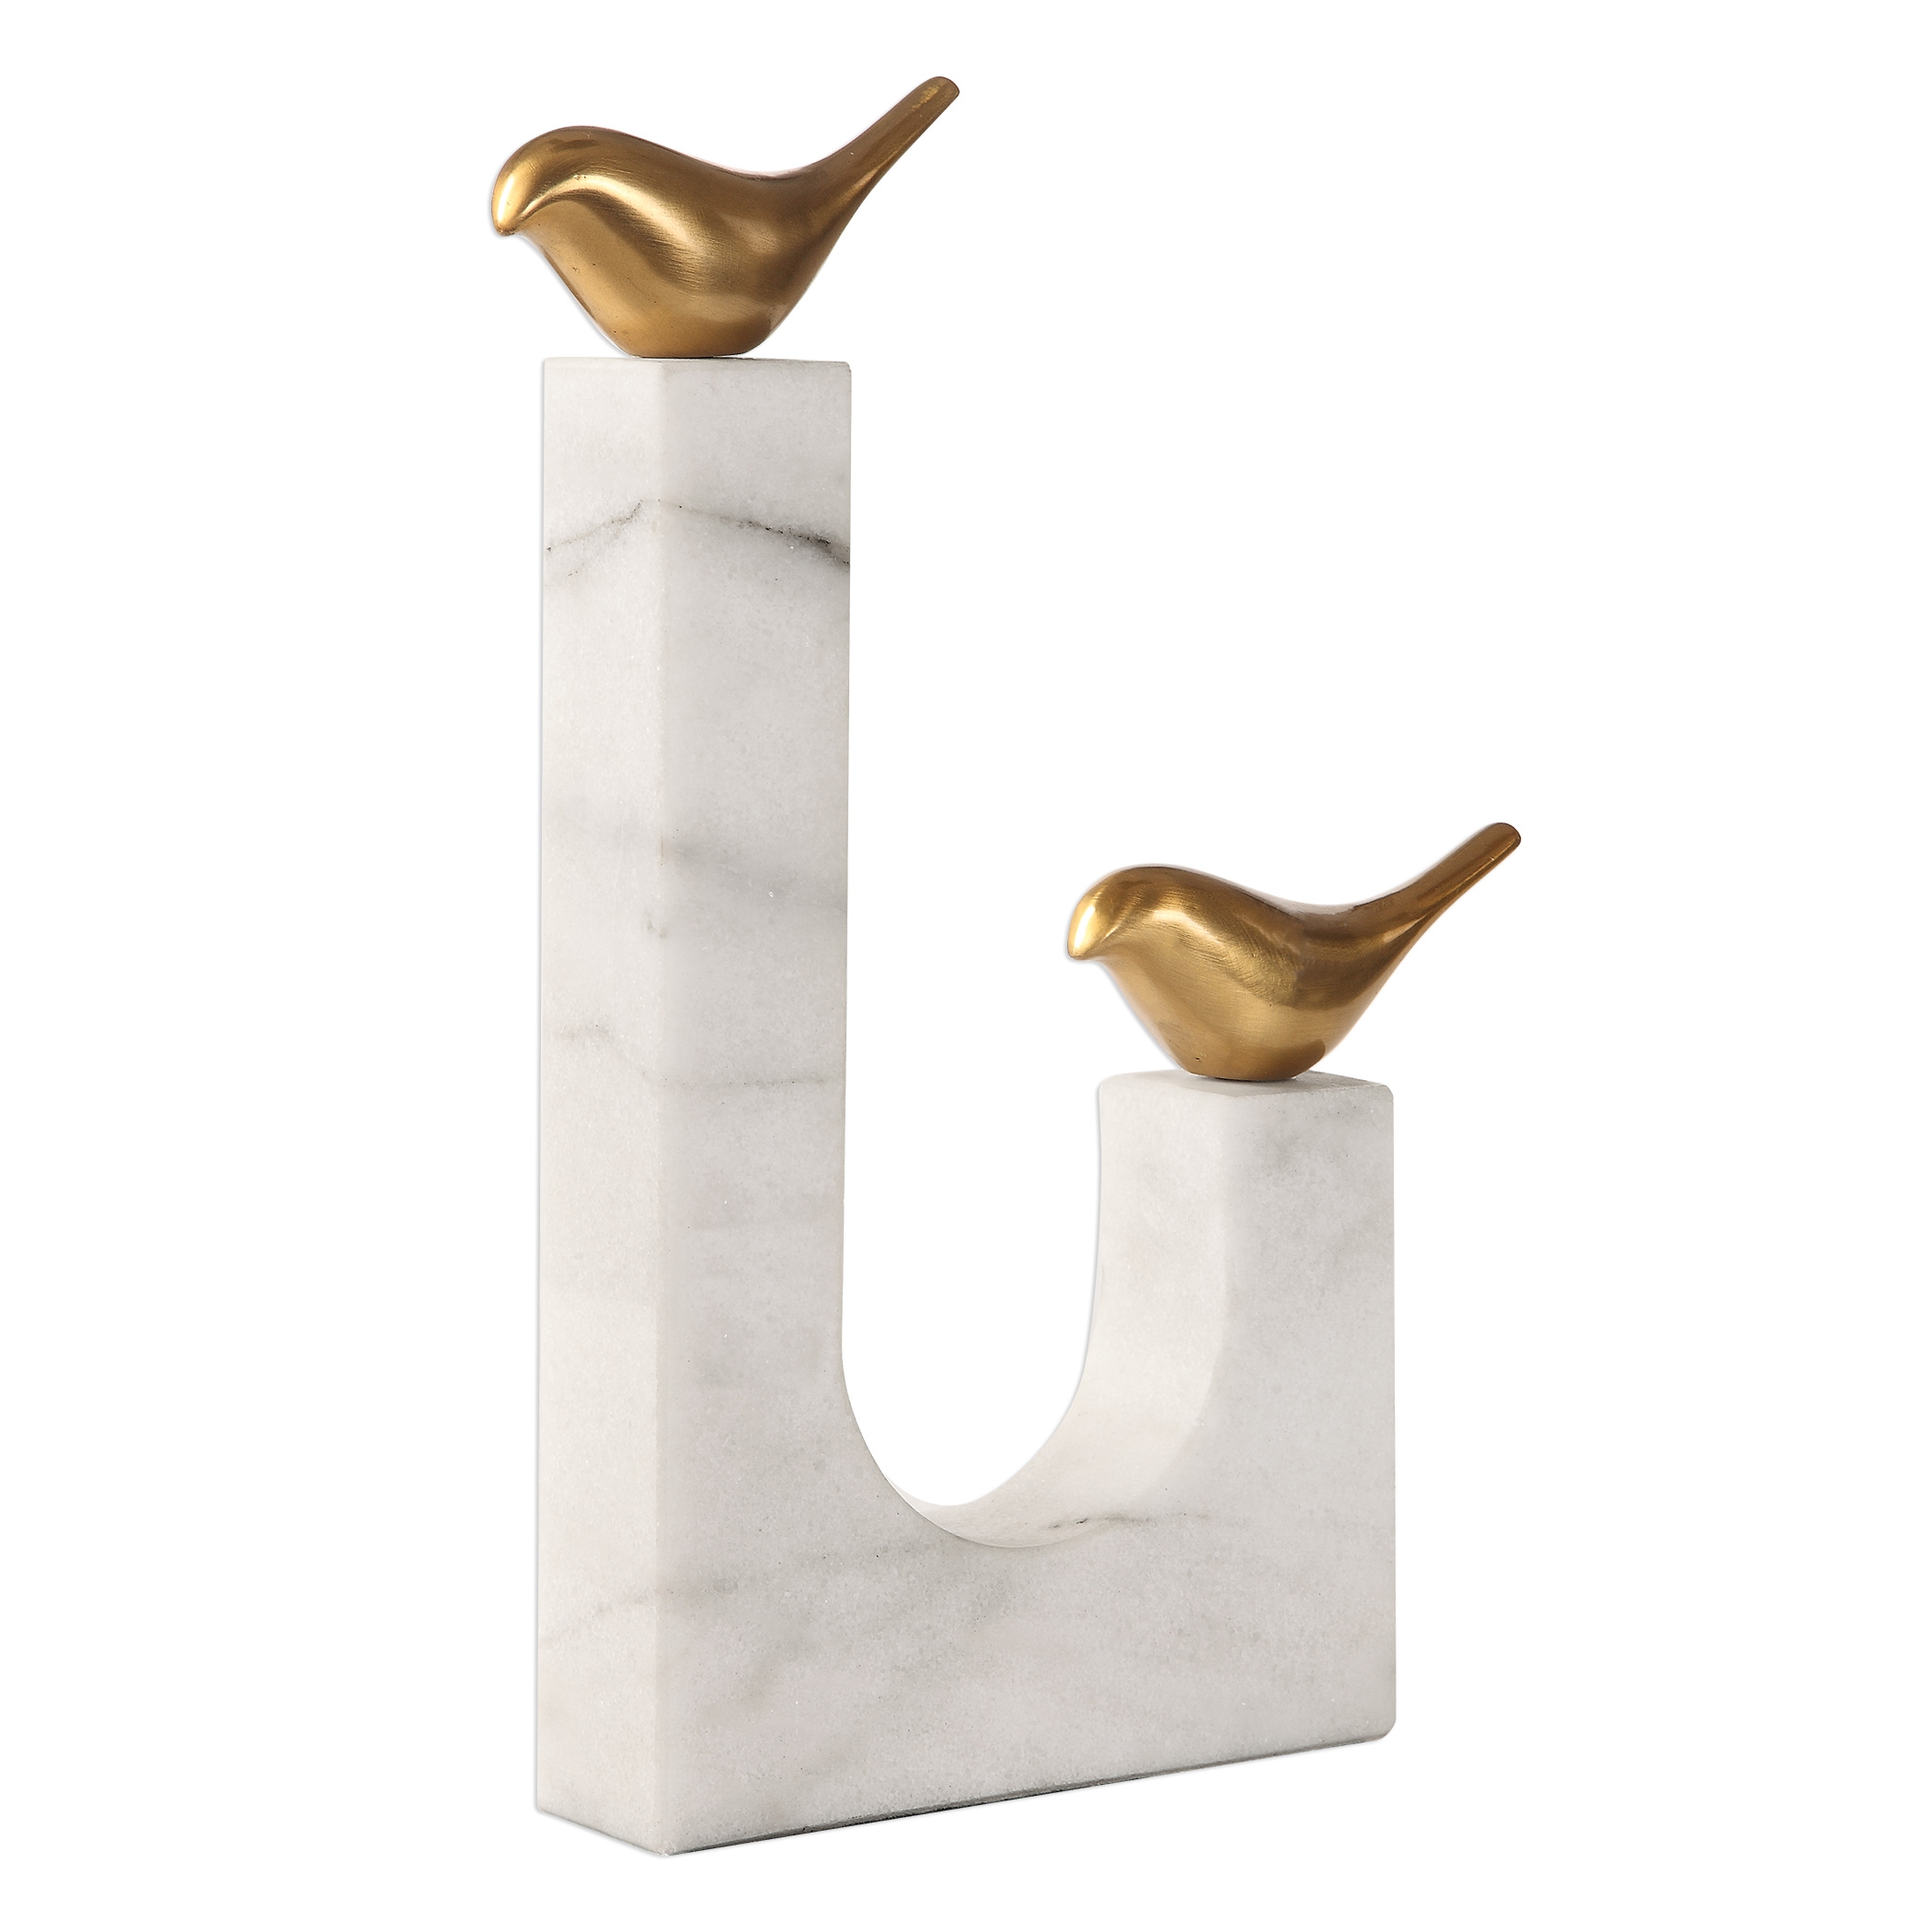 Songbirds Brass Sculpture - Image 2